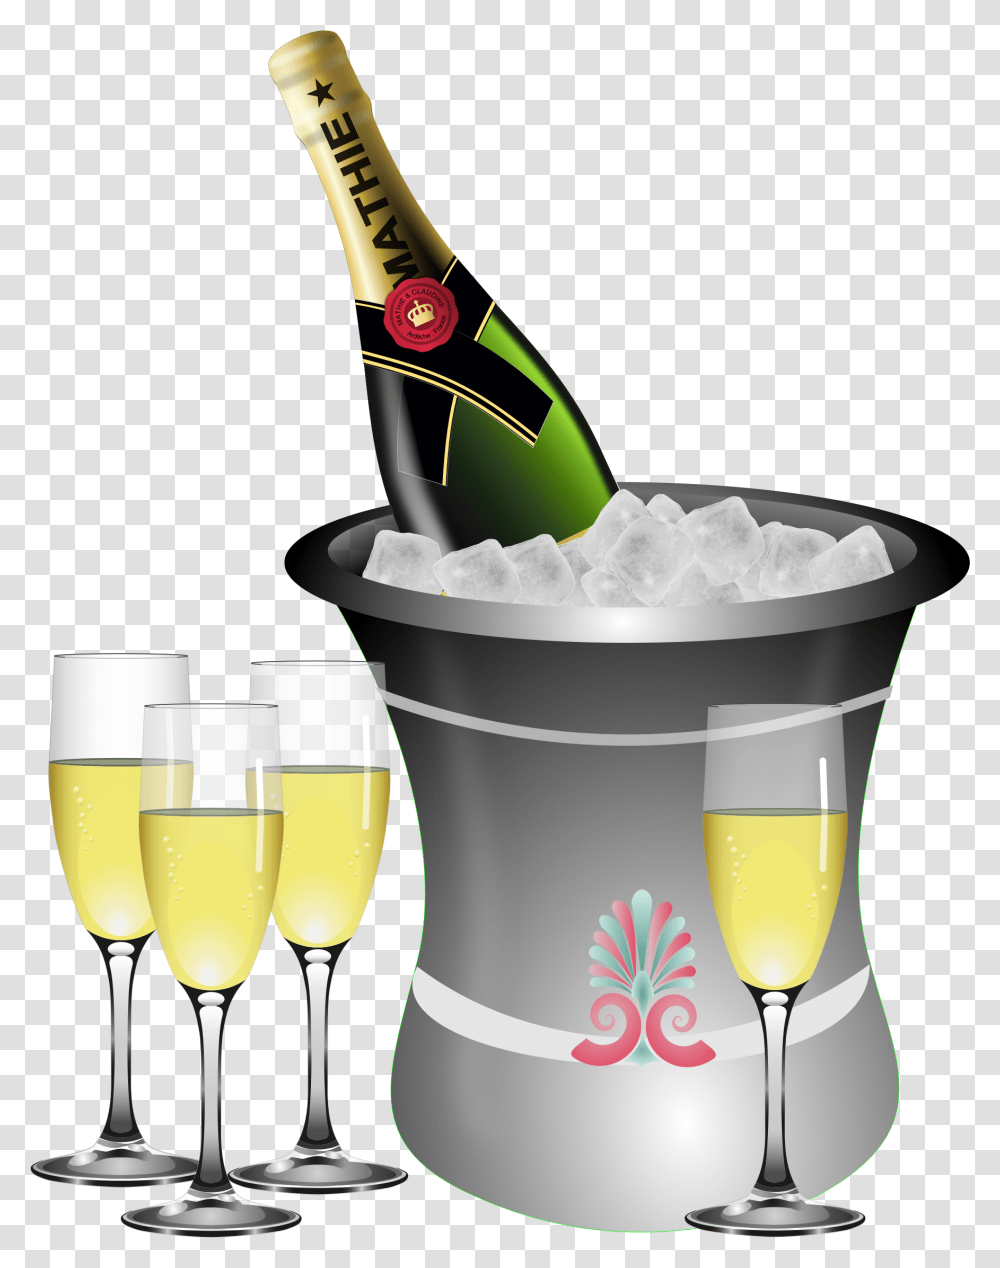 Champagne Bottle Celebration Clip Art Champagne, Glass, Alcohol, Beverage, Drink Transparent Png